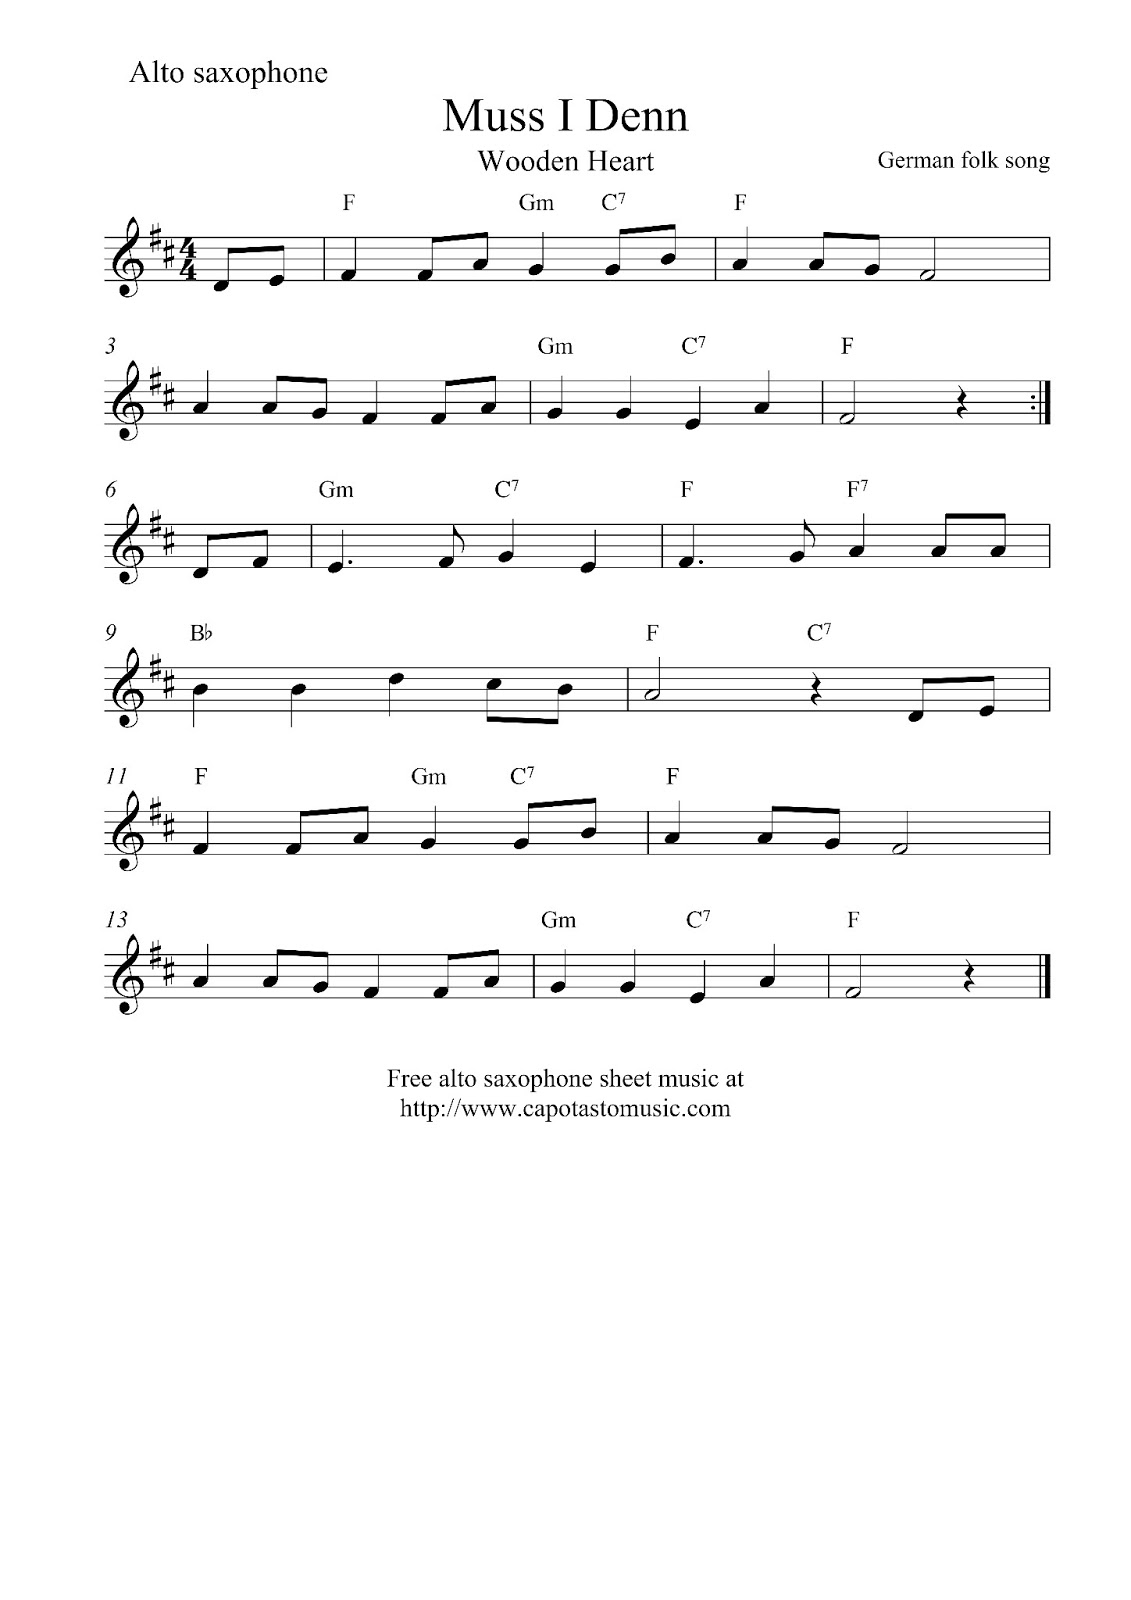 free-alto-saxophone-sheet-music-muss-i-denn-wooden-heart